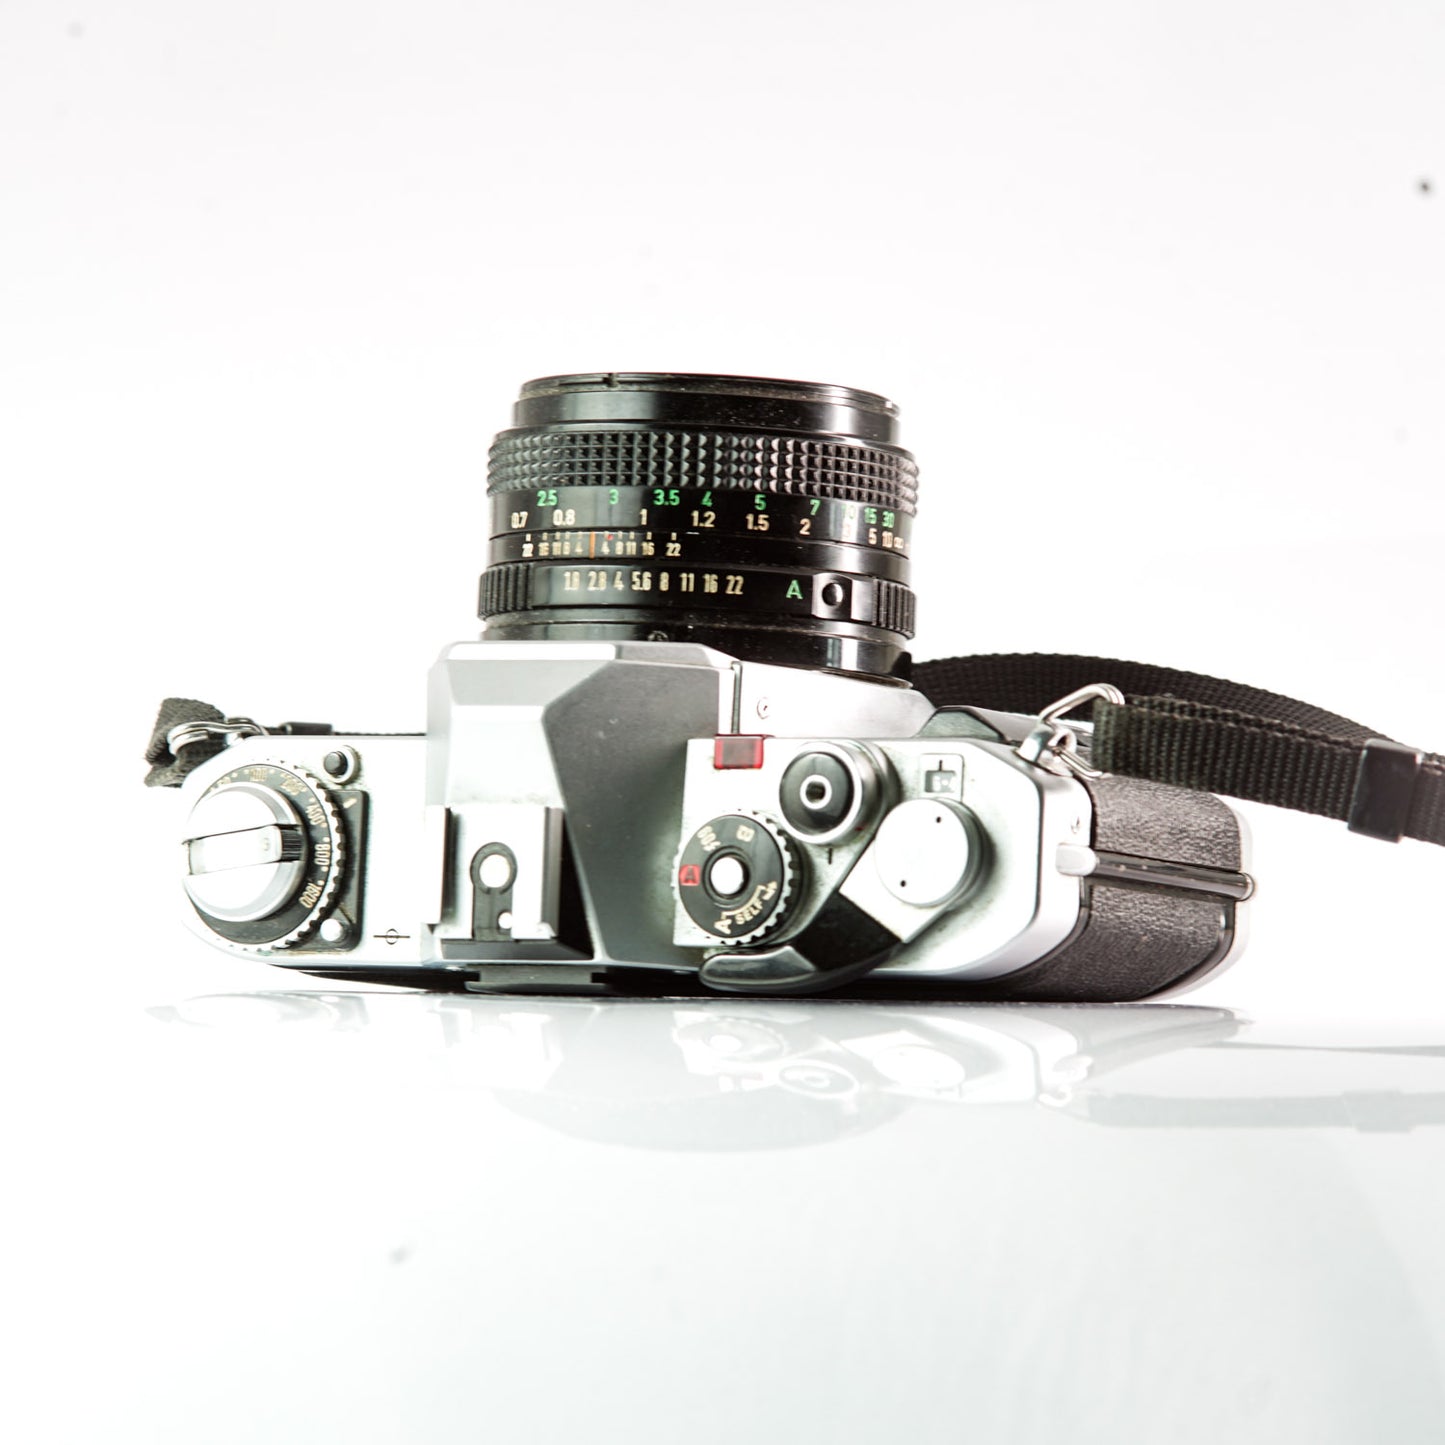 Canon AV1 50 mm f/1,8